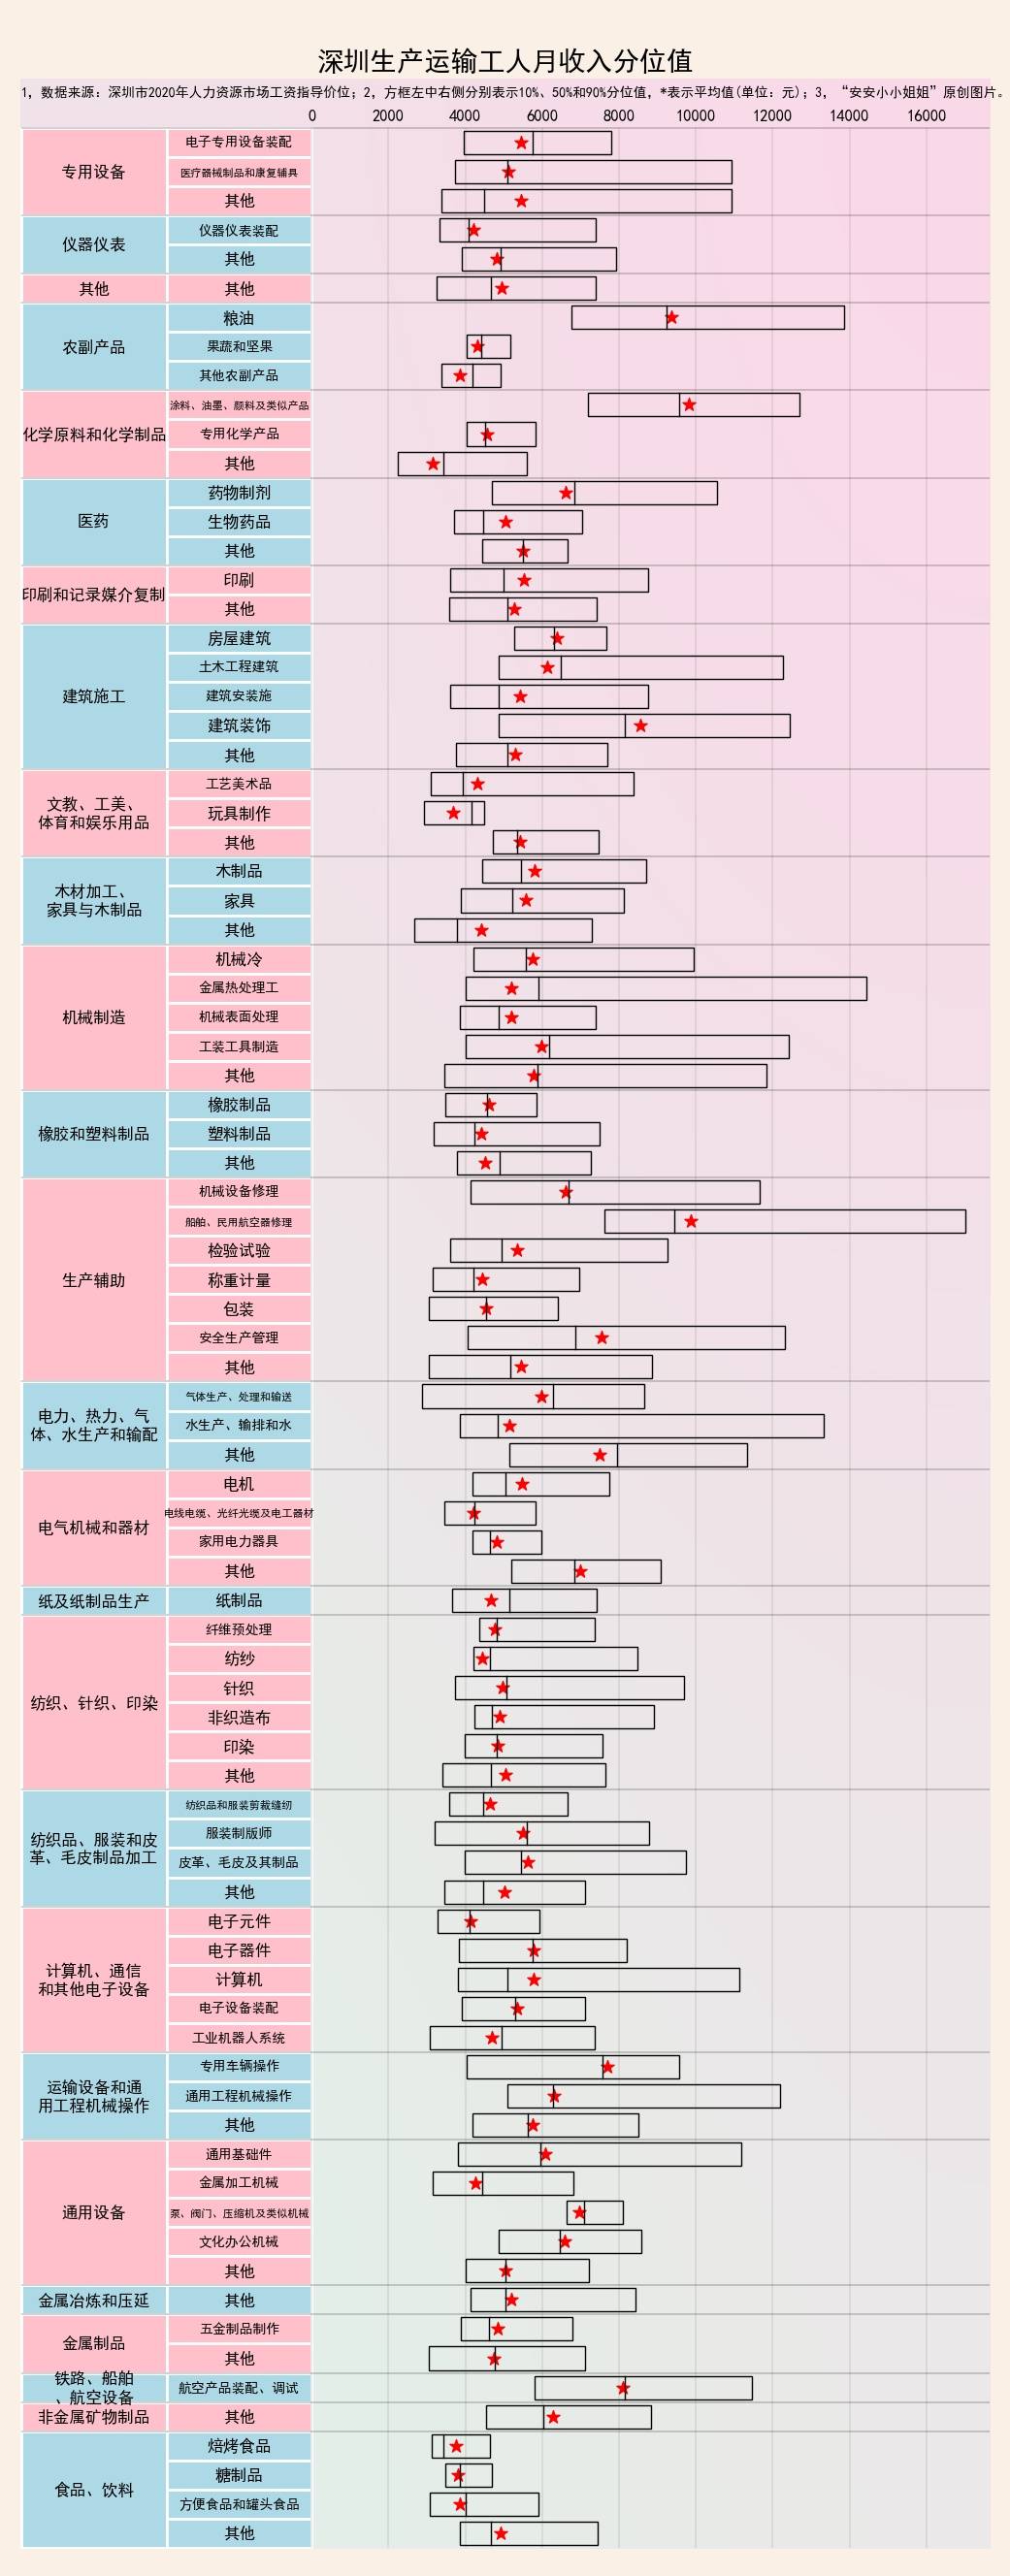 深圳人月收入概况：全行业平均7千8，中位数6千4